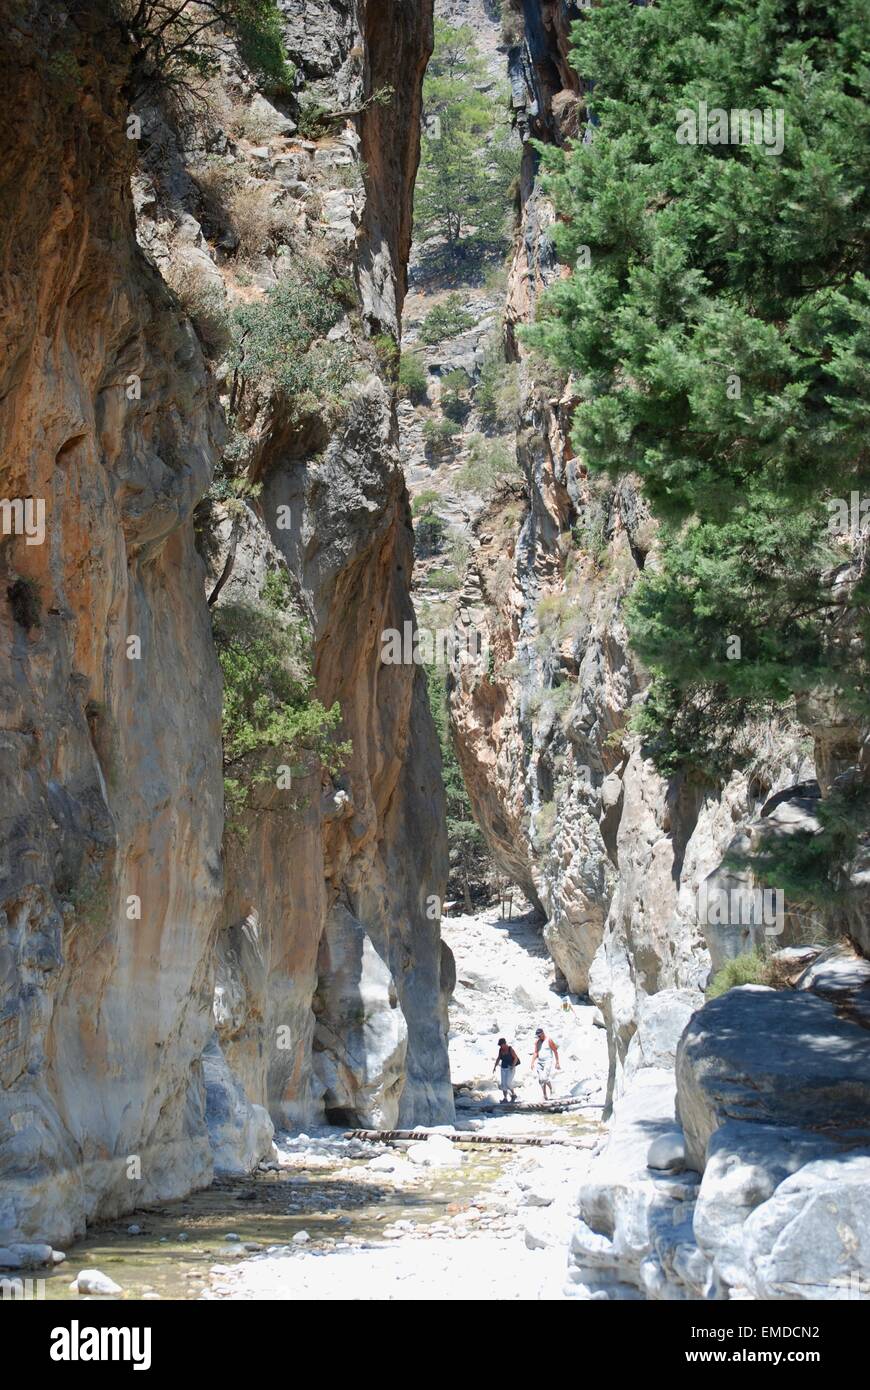 Persone che camminano lungo un caldo letto asciutto del fiume ad un passo stretto tra i ripidi lati della gola di Samaria, Creta sud-occidentale, Grecia. Foto Stock